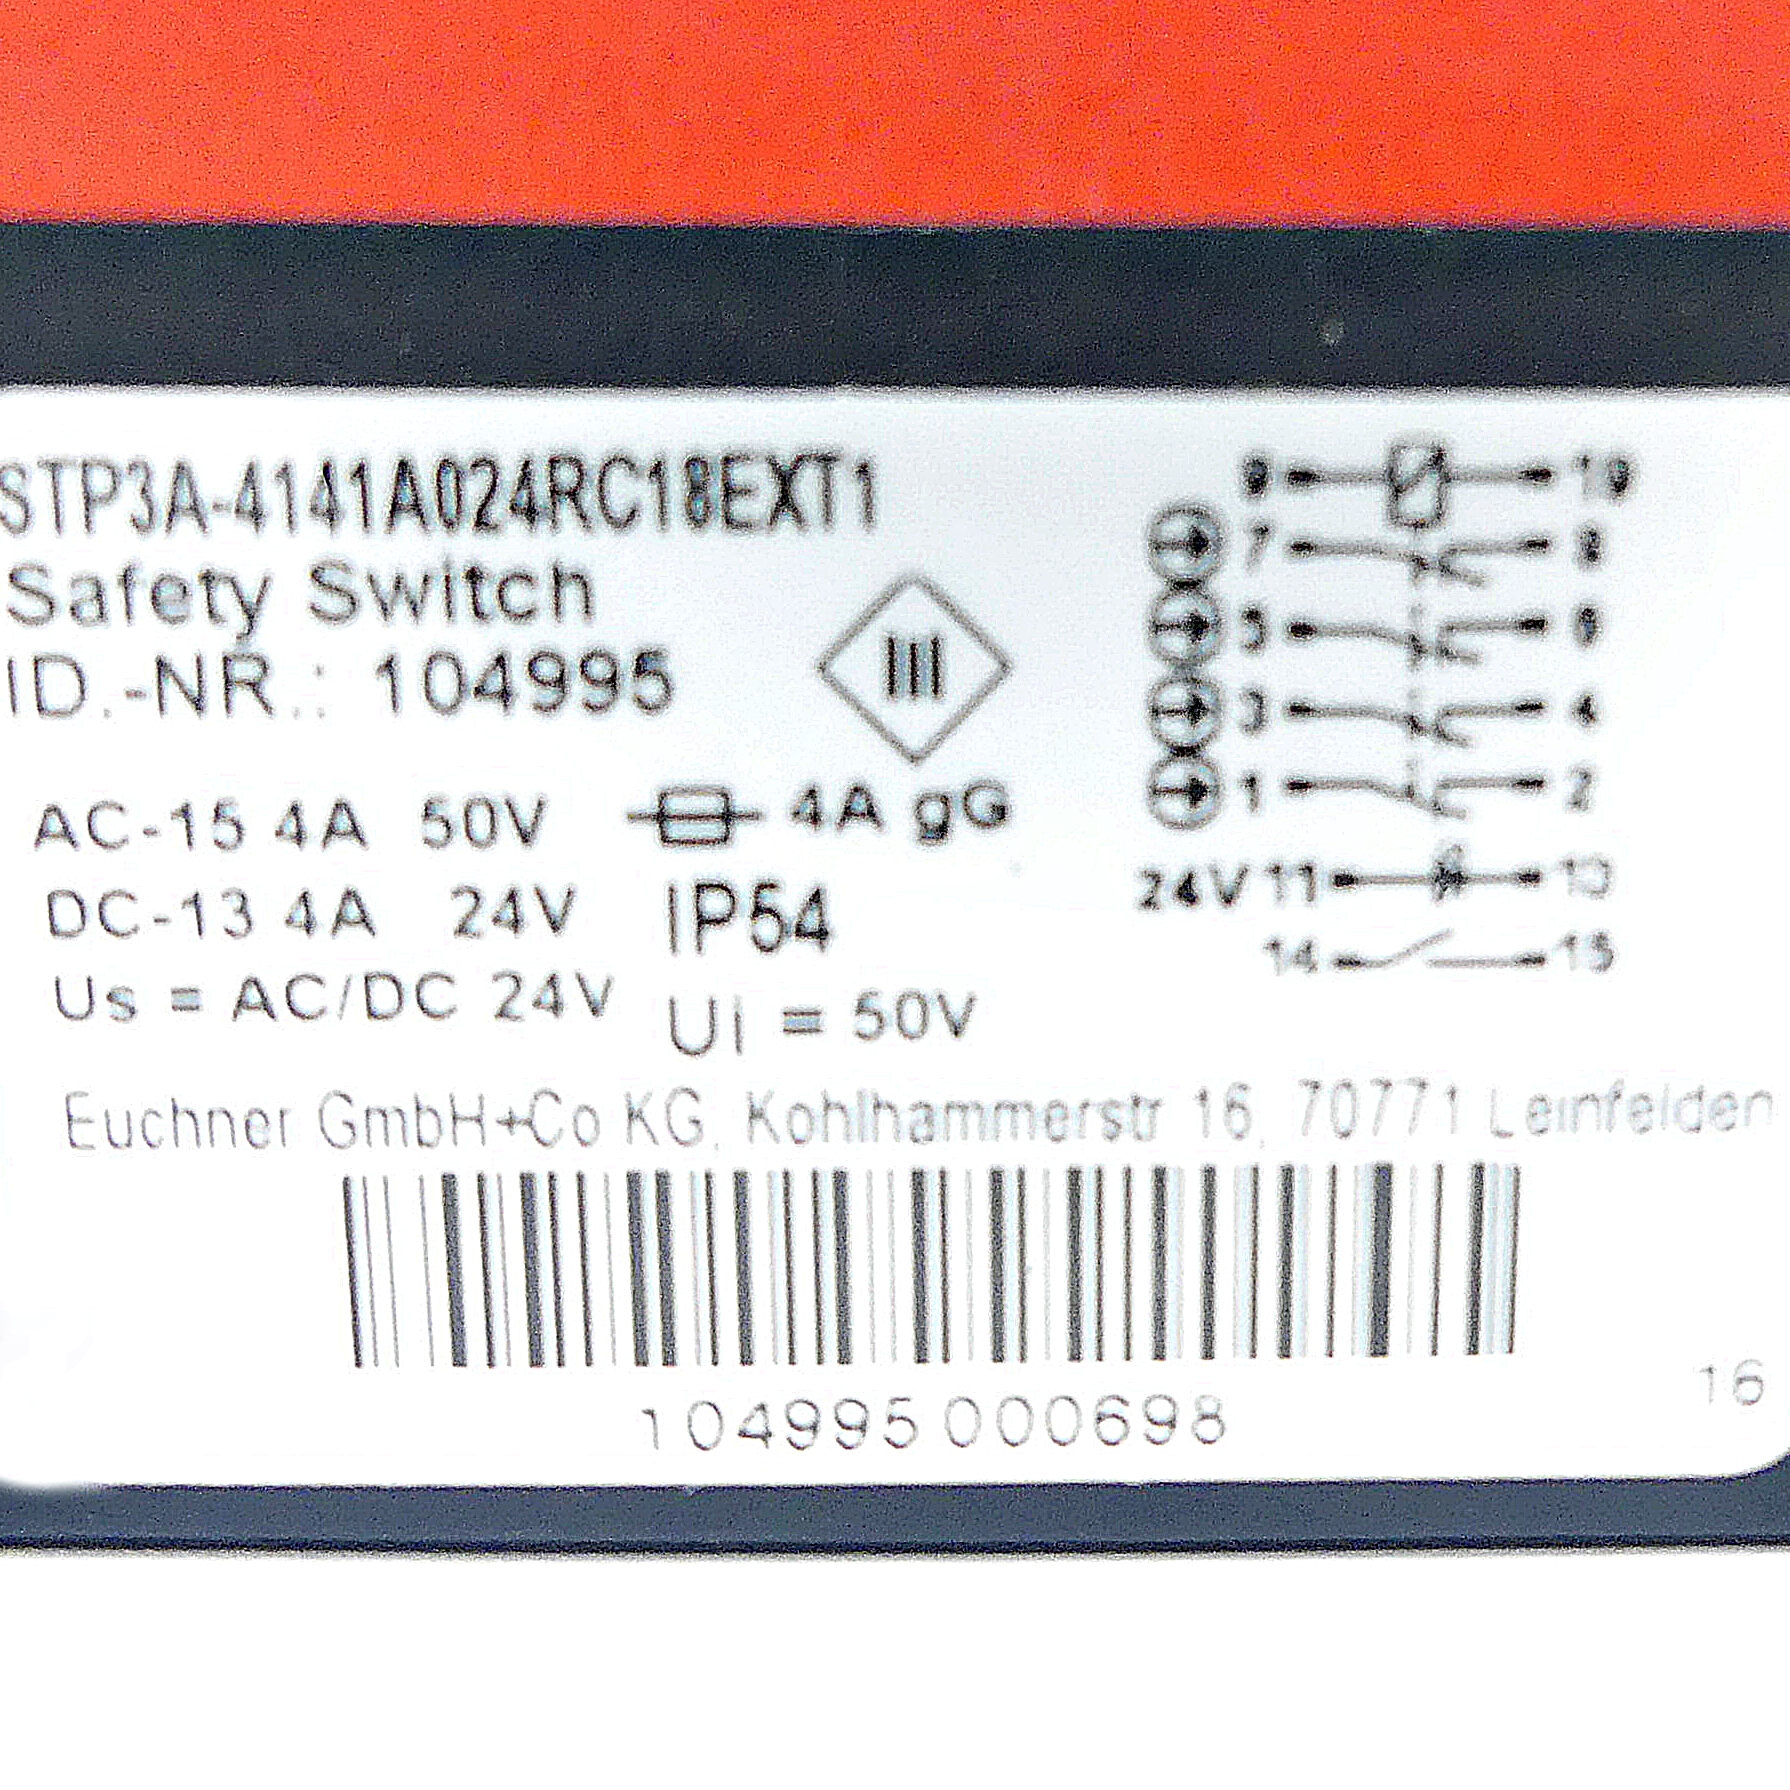 Sicherheitsschalter STP3A-4141A024RC18EXT1 